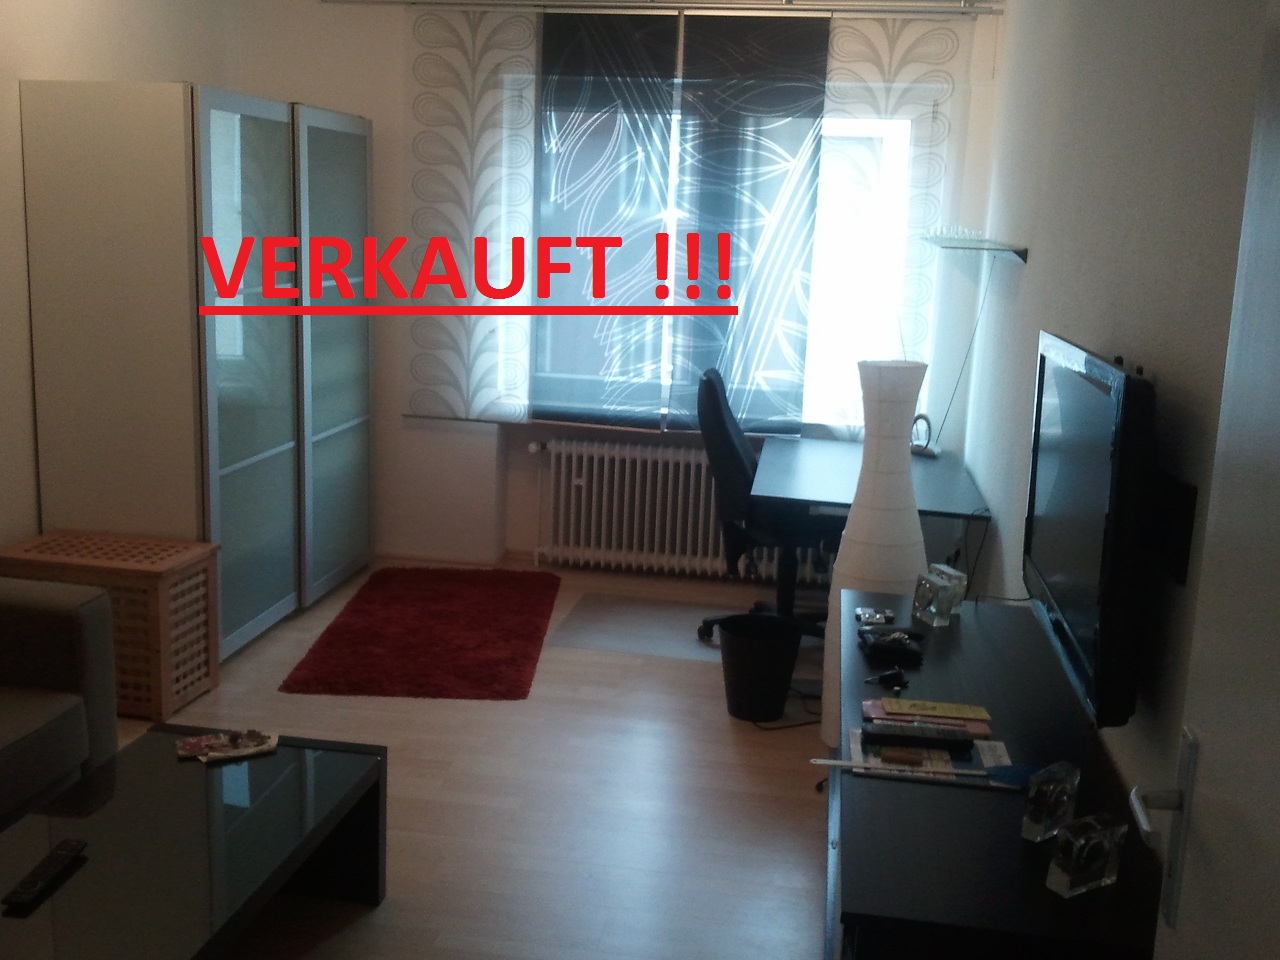 Verkauft — Ideale Single-Appartementwohnung in der City von Jülich. Kaufen statt Mieten.